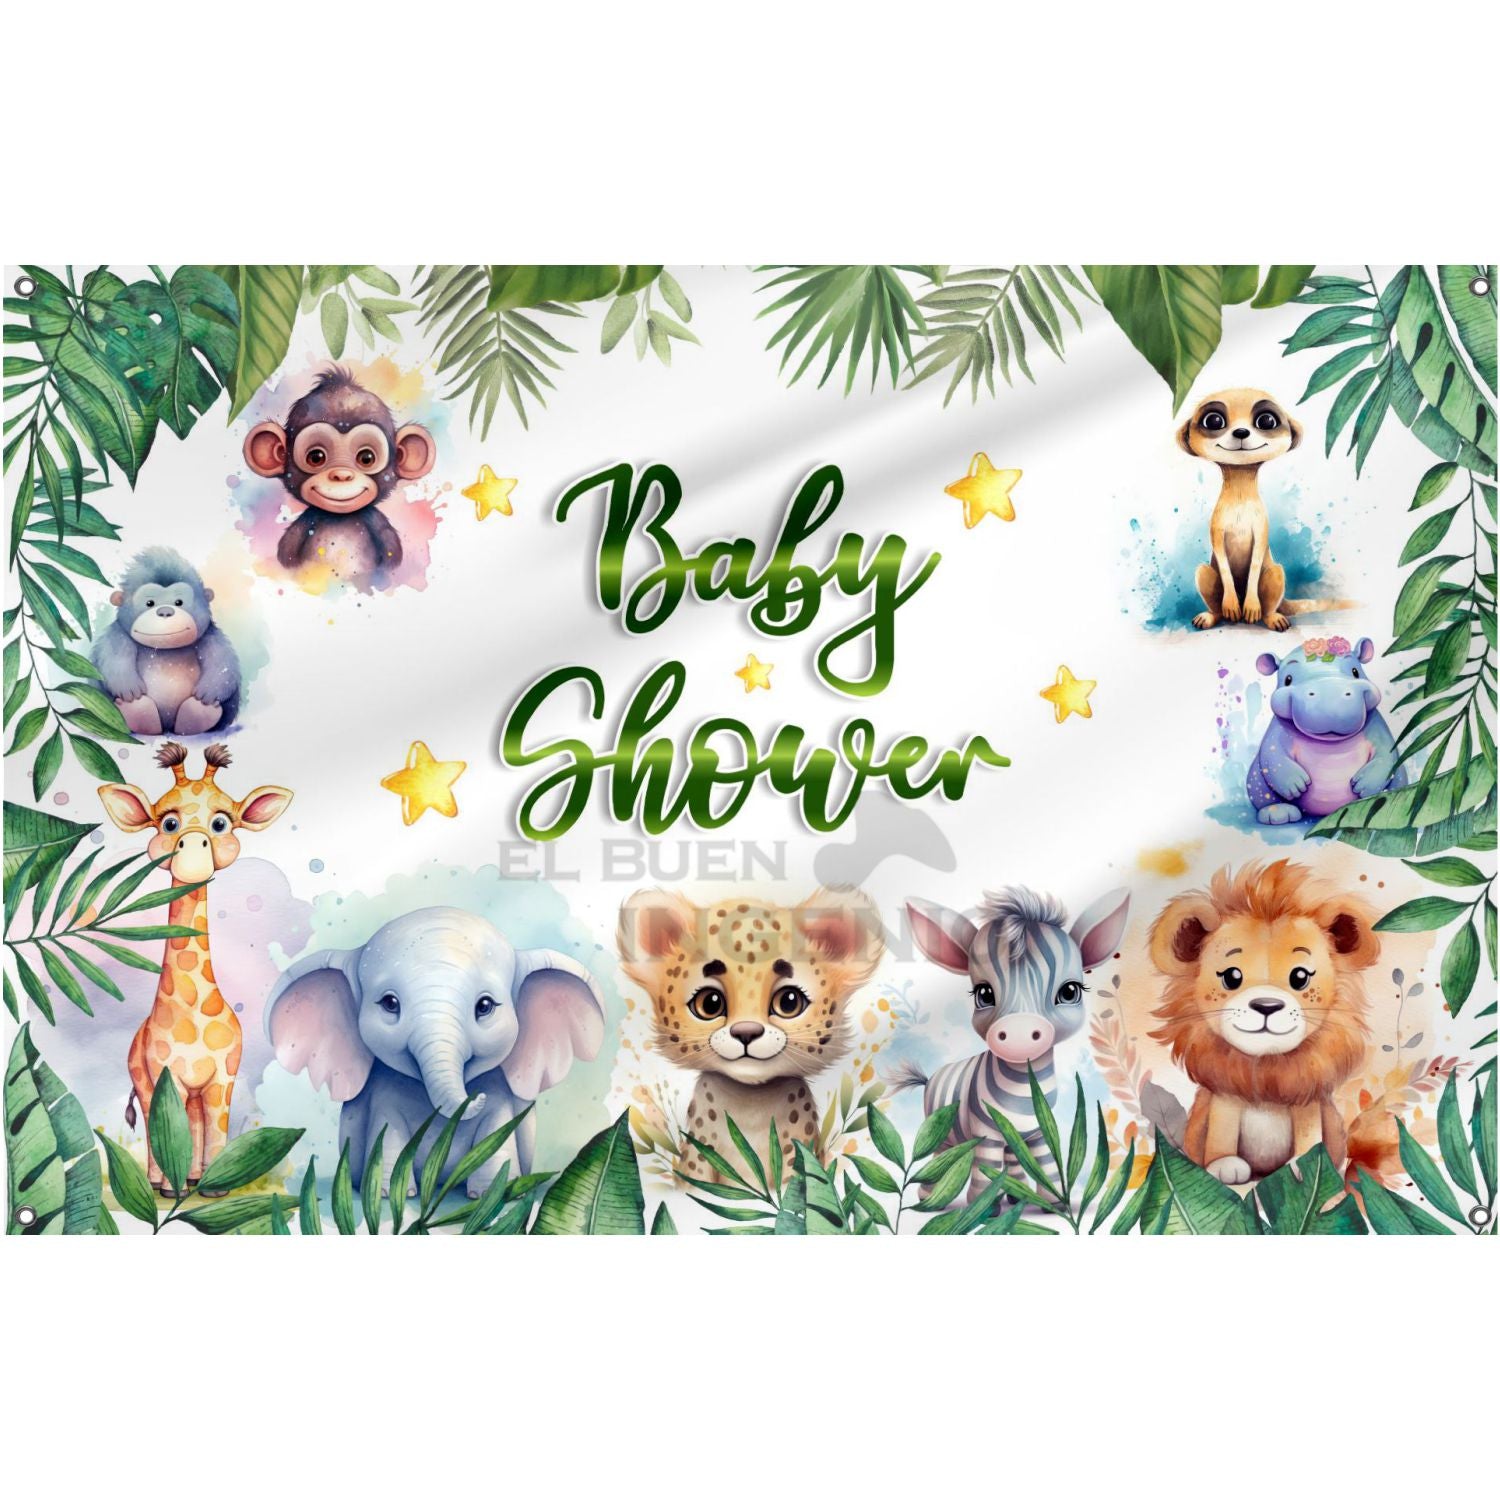 Lona impresa decoración fiesta mesa de dulces tema Baby Shower Safari Jungla